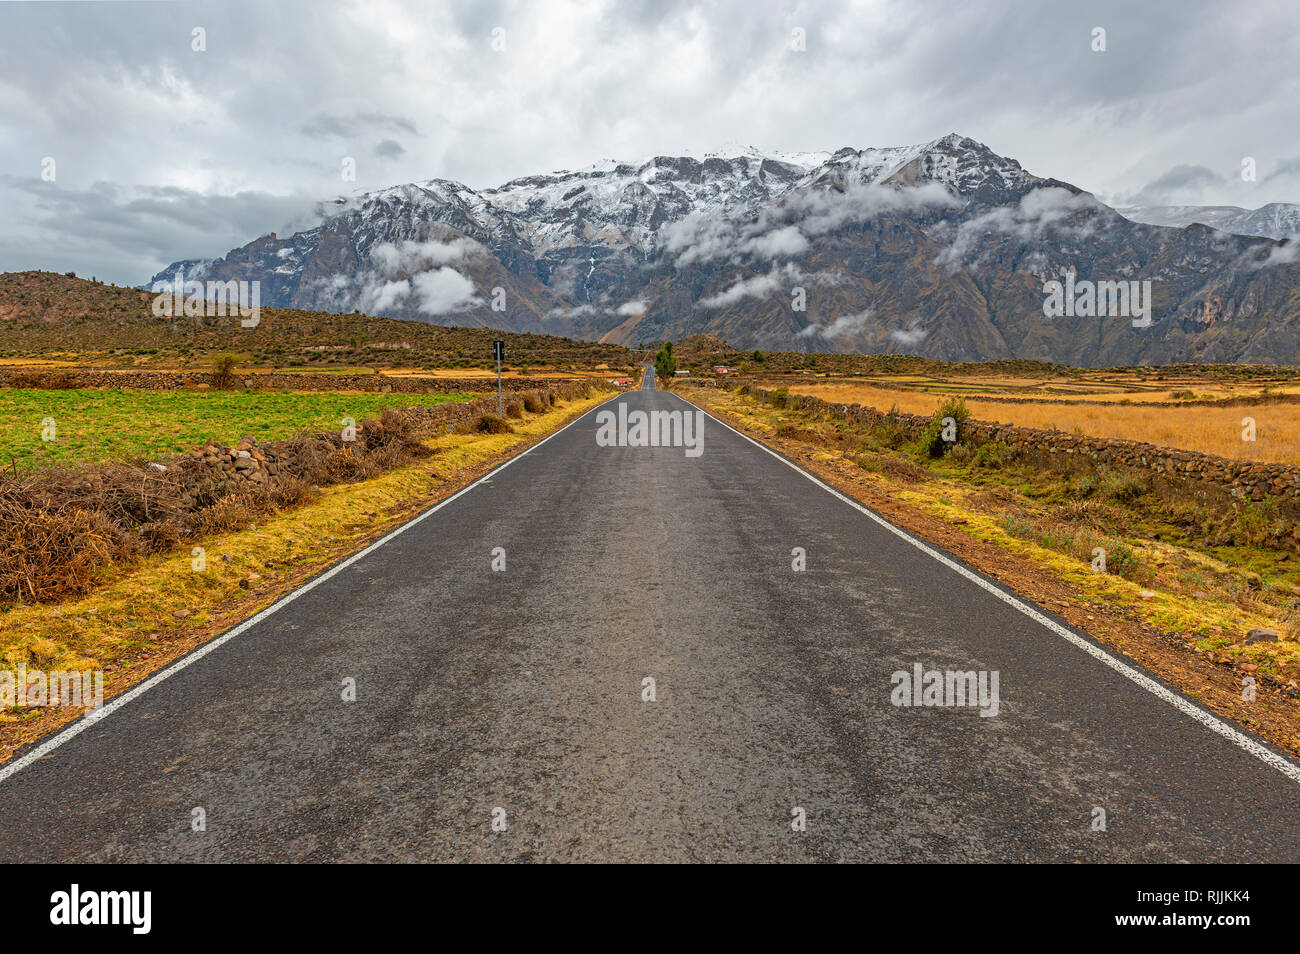 Auf der Straße Landschaft einer Autobahn in den Anden von Peru in der Region Arequipa und der Colca Canyon, Südamerika. Stockfoto